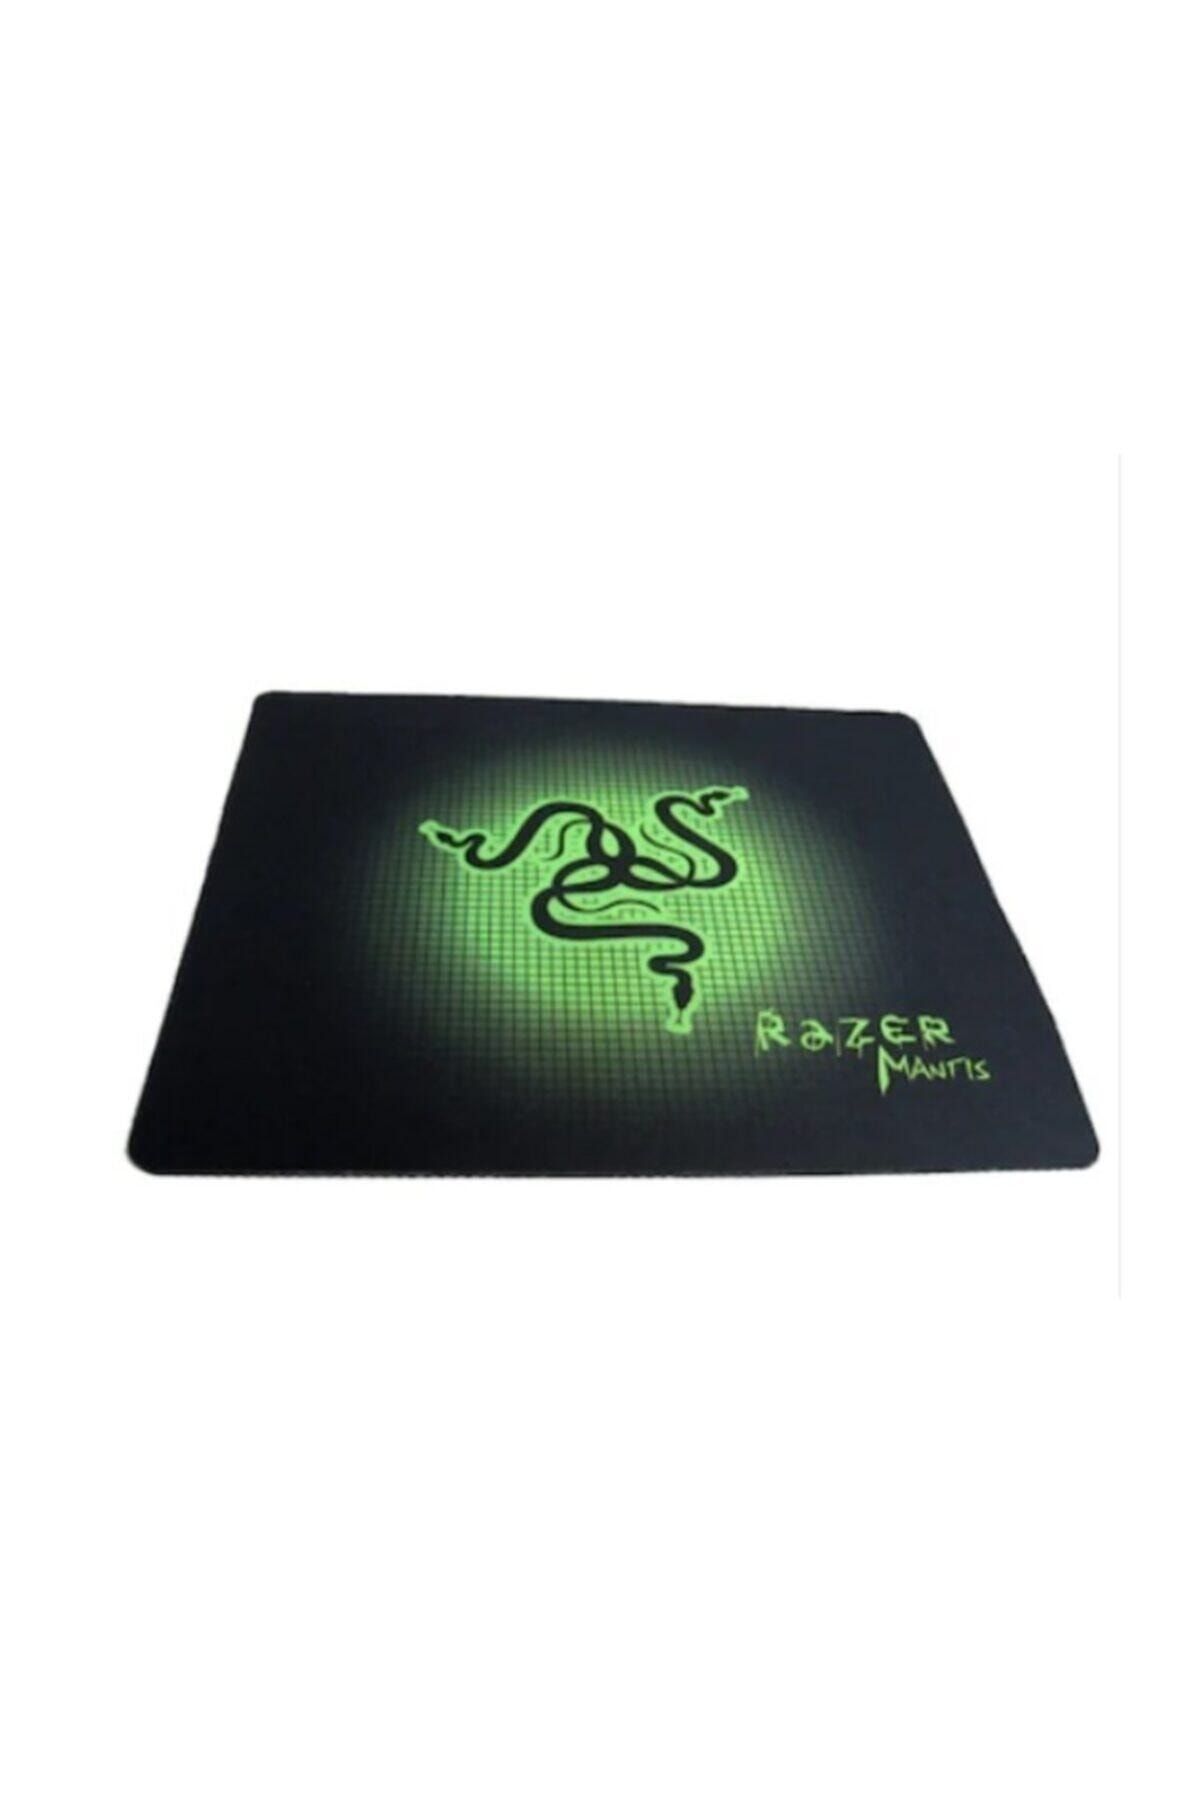 TEKNO İSTANBUL Razer Desenli Baskılı Gaming Oyuncu Mouse Pad 25*21cm